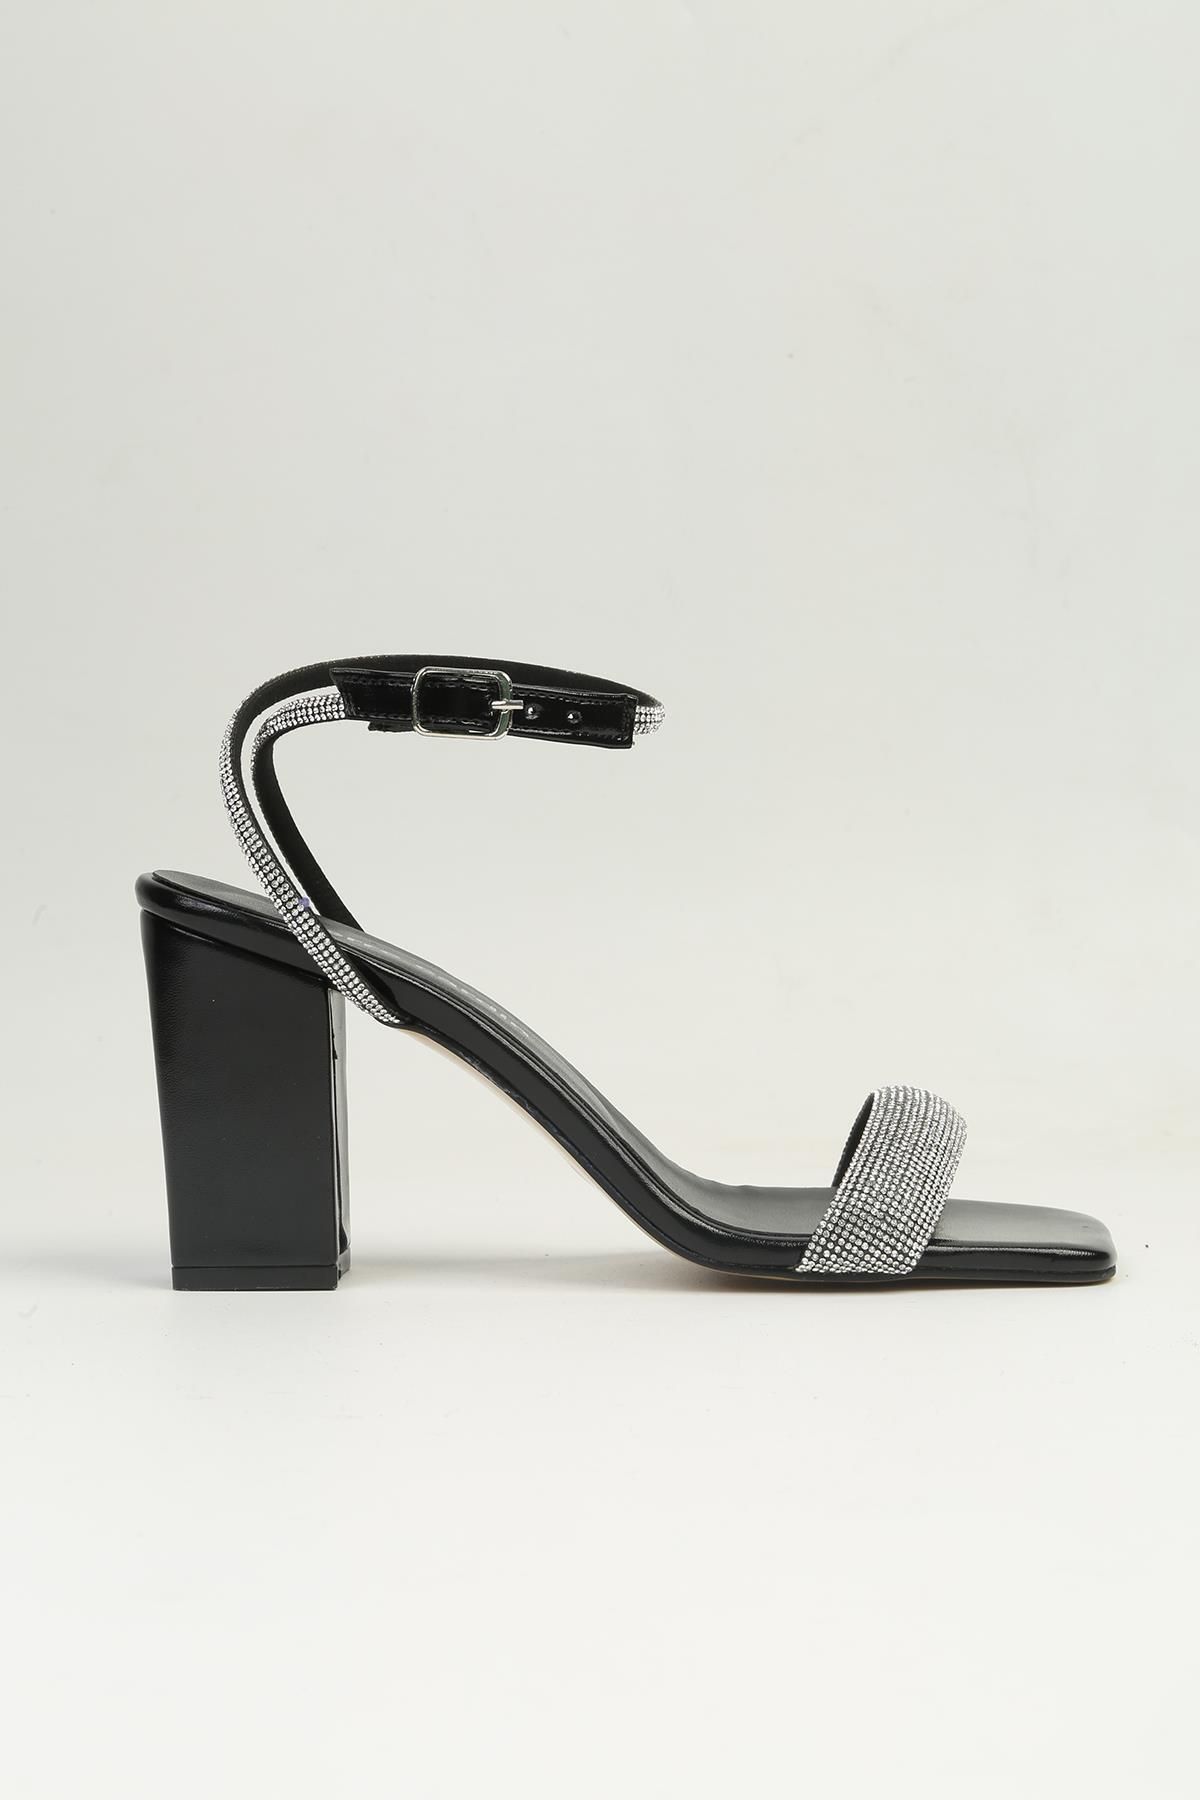 Pierre Cardin ® | PC-53056- 3959 Siyah-Kadın Topuklu Ayakkabı